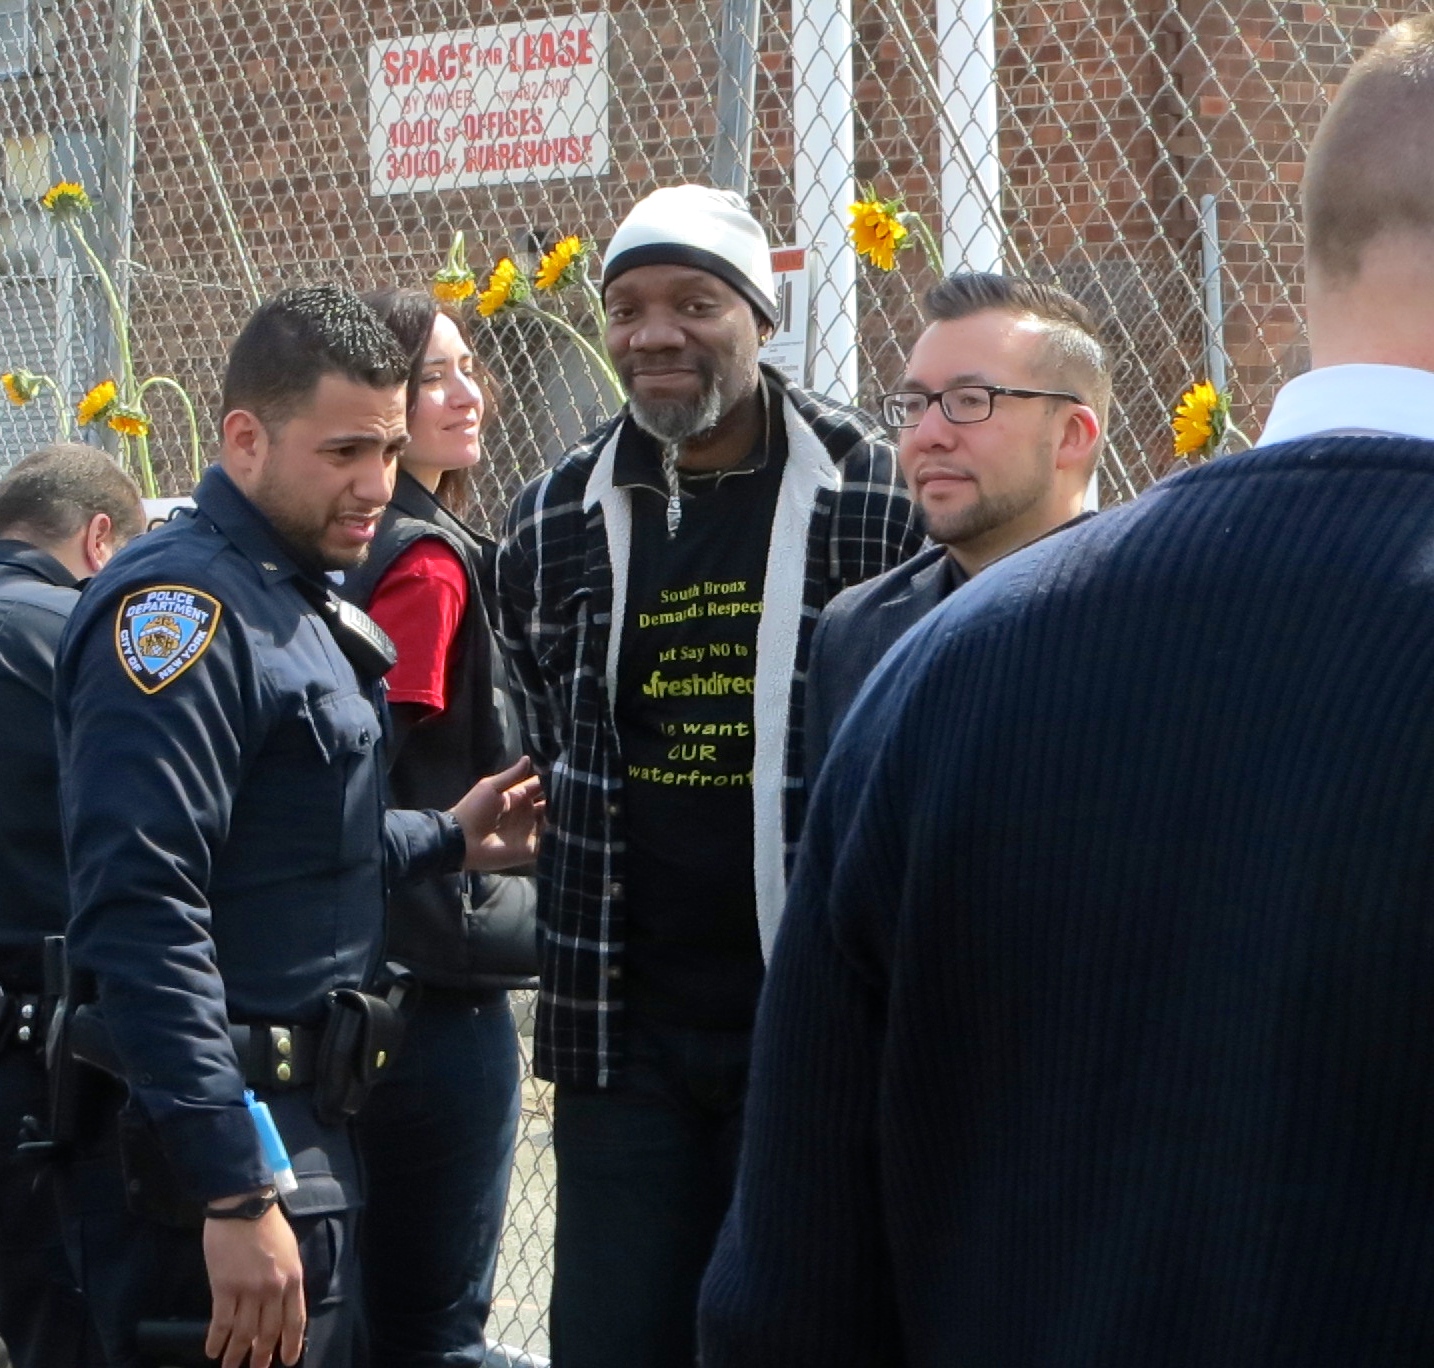 Nine protestors arrested at Harlem River Yard